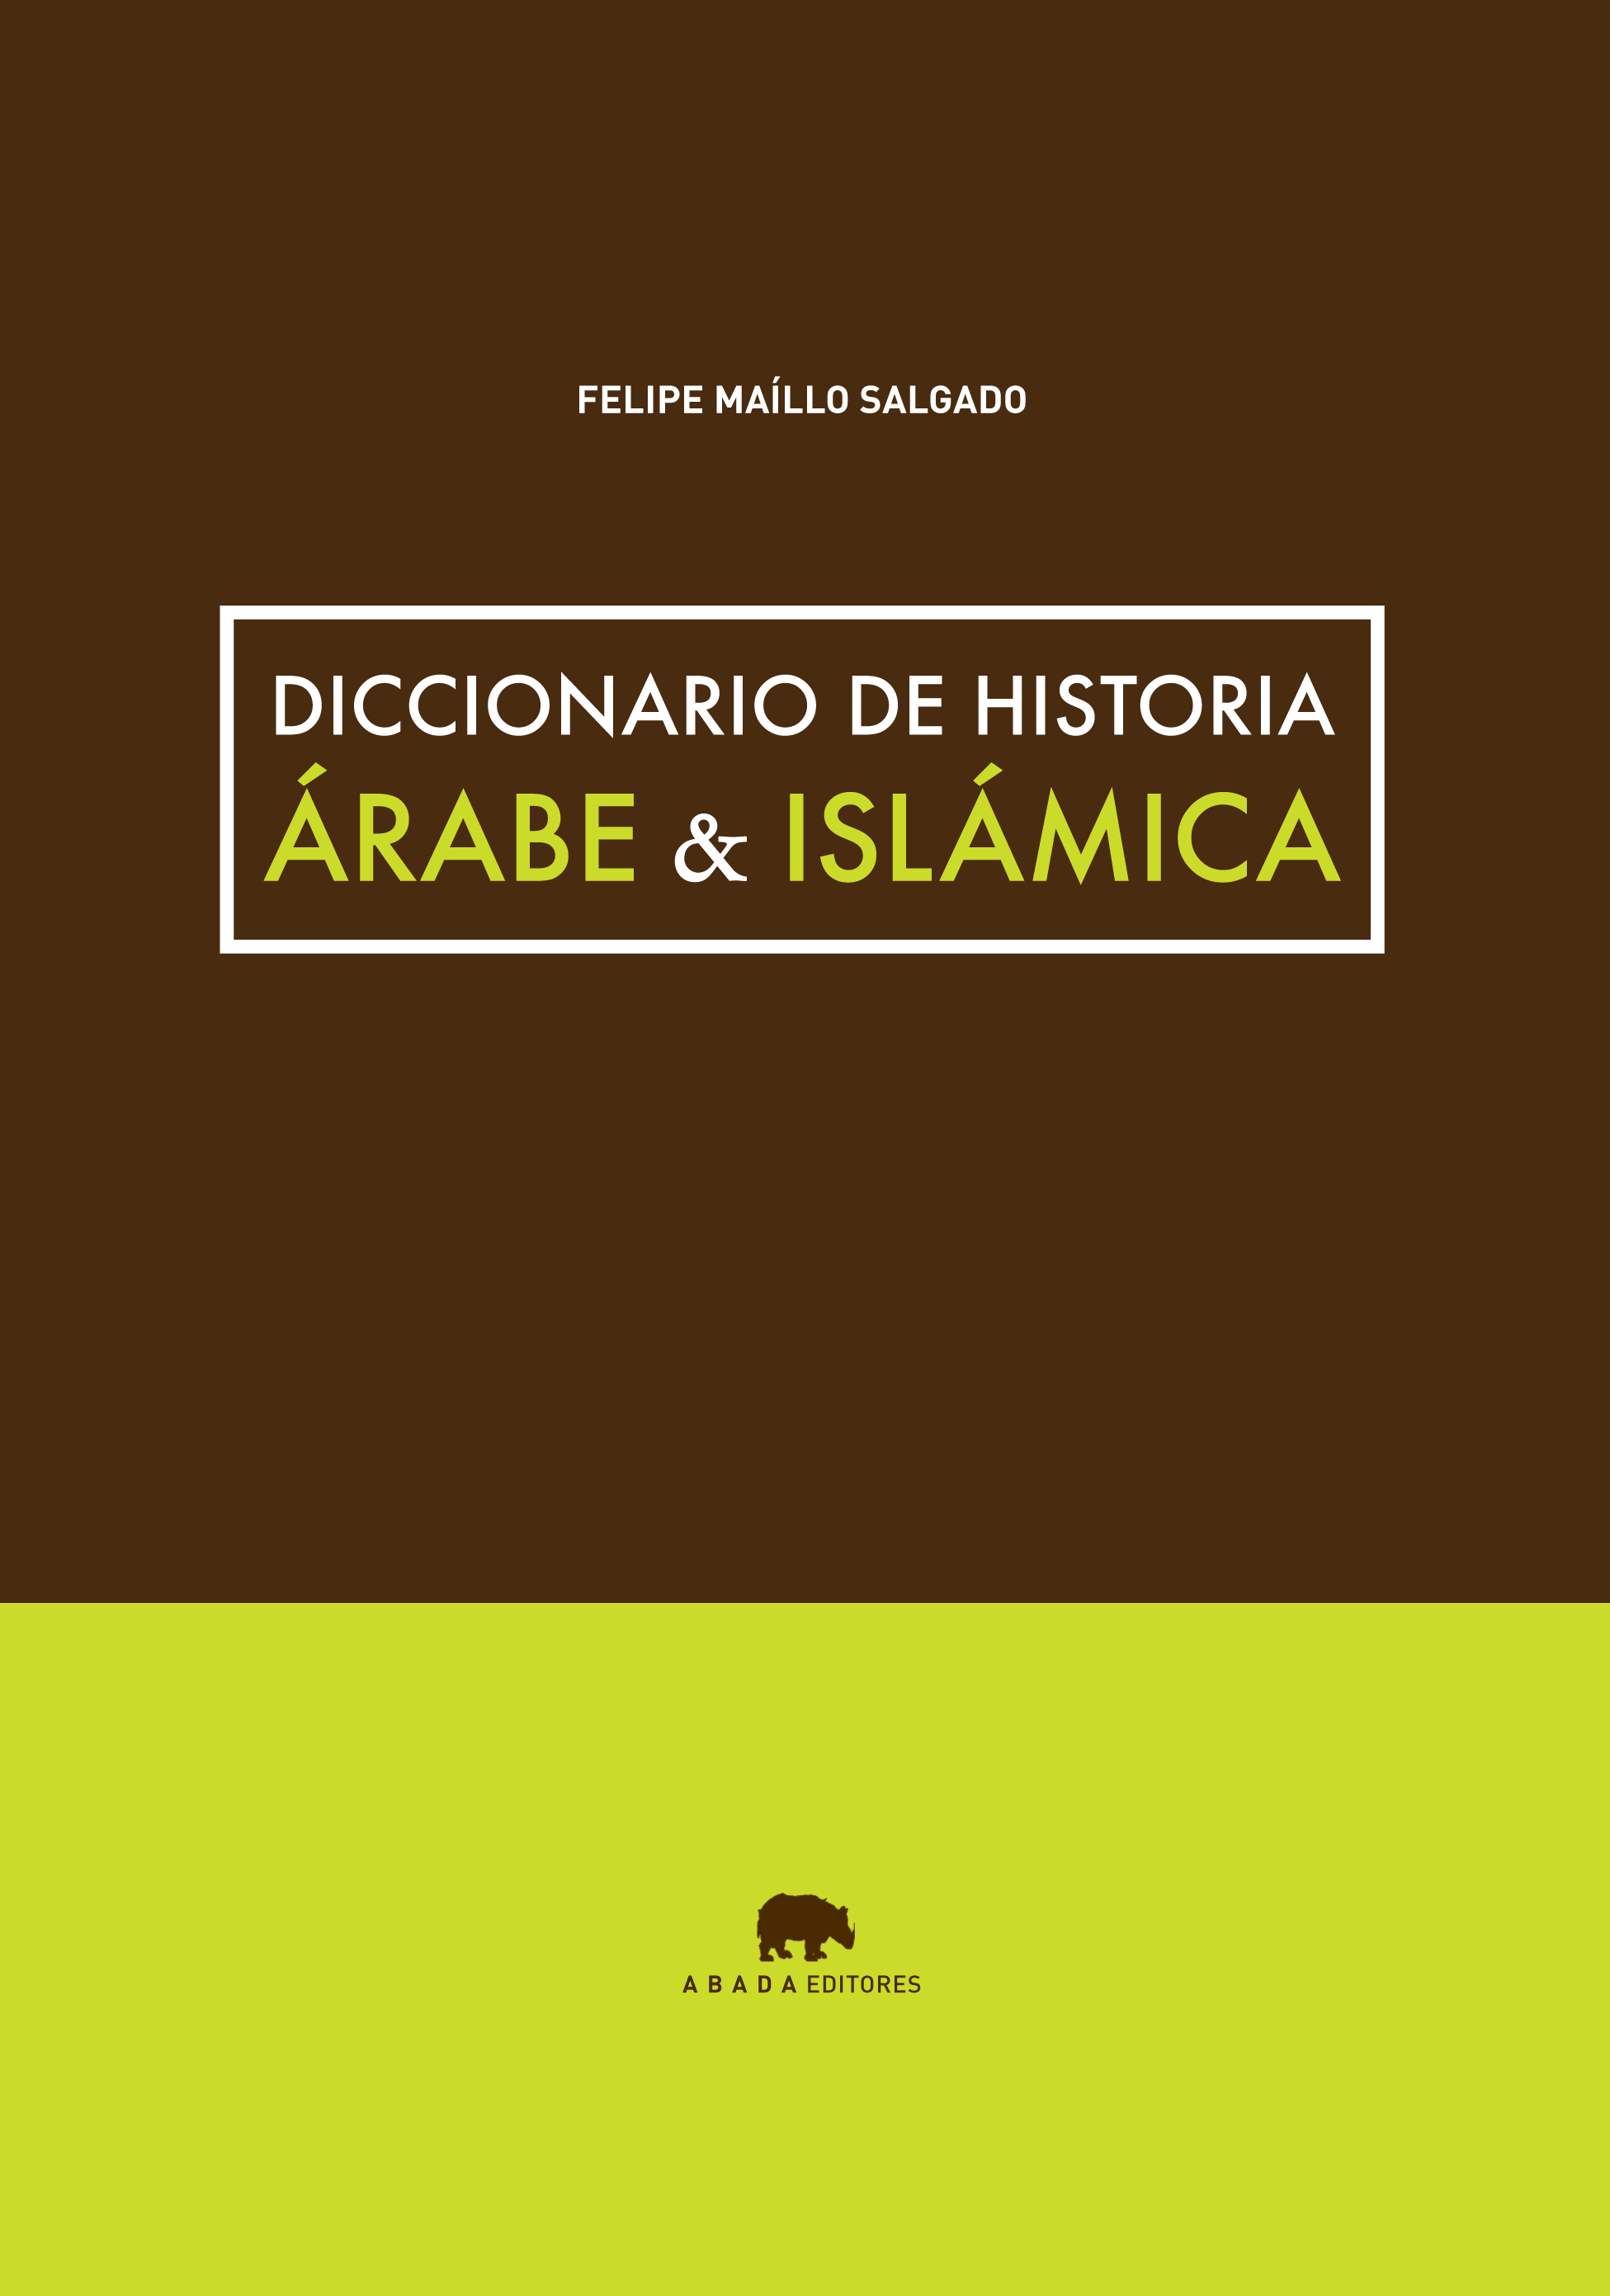 Descargar DICCIONARIO DE HISTORIA ARABE & ISLAMICA